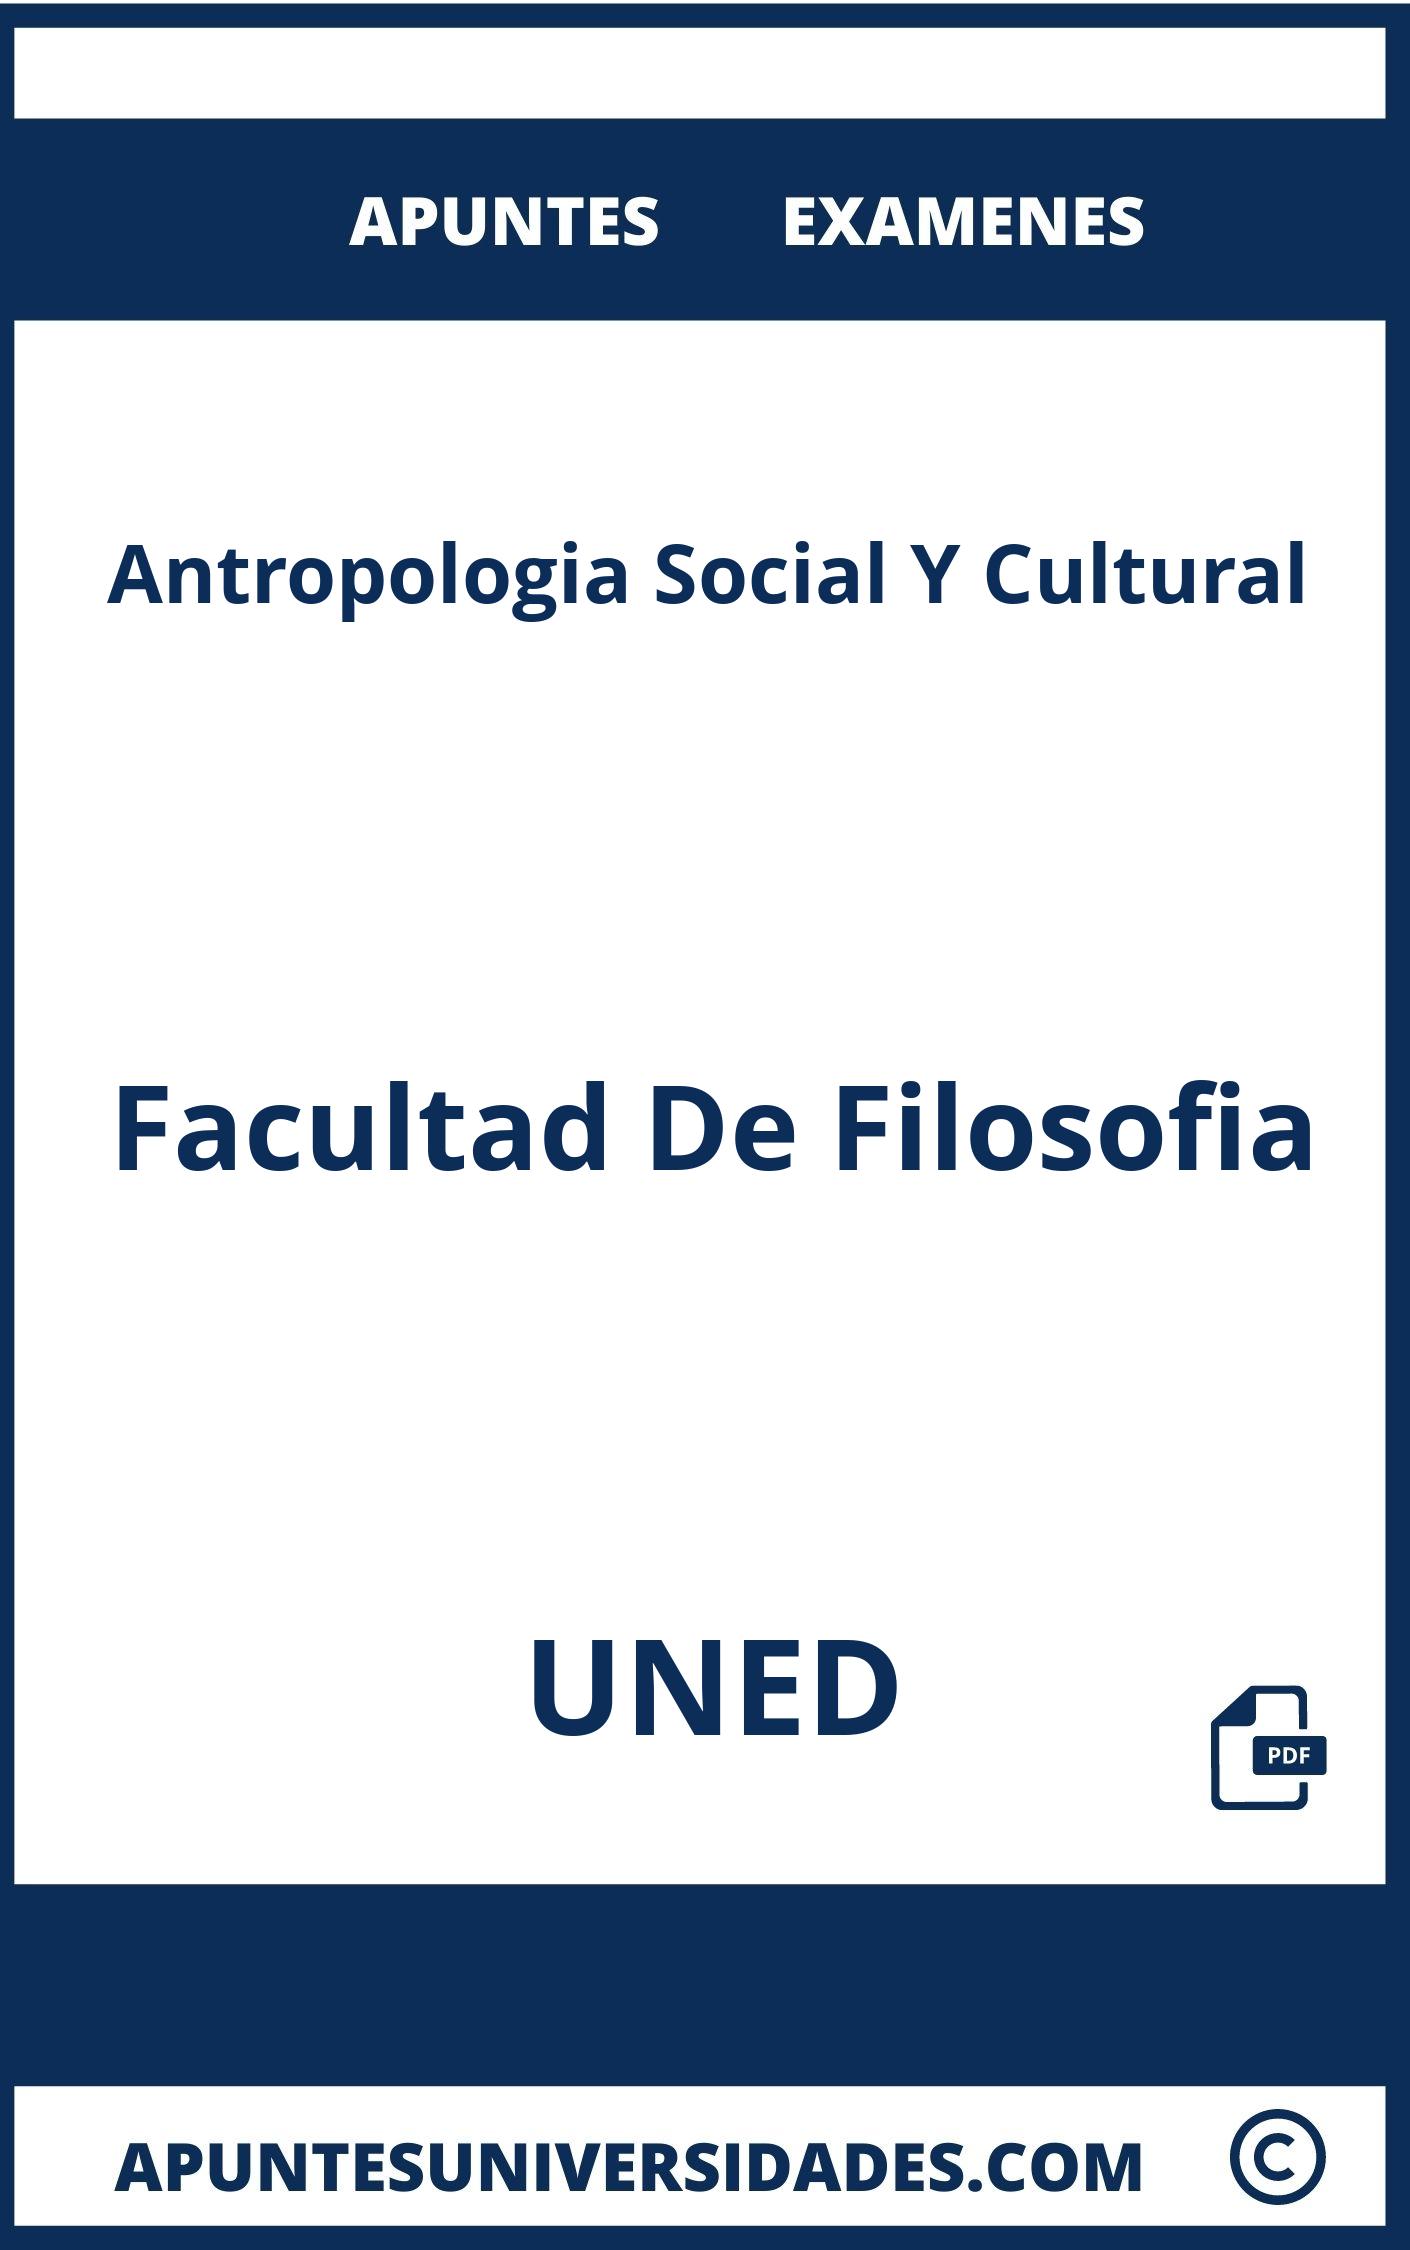 Examenes y Apuntes Antropologia Social Y Cultural UNED